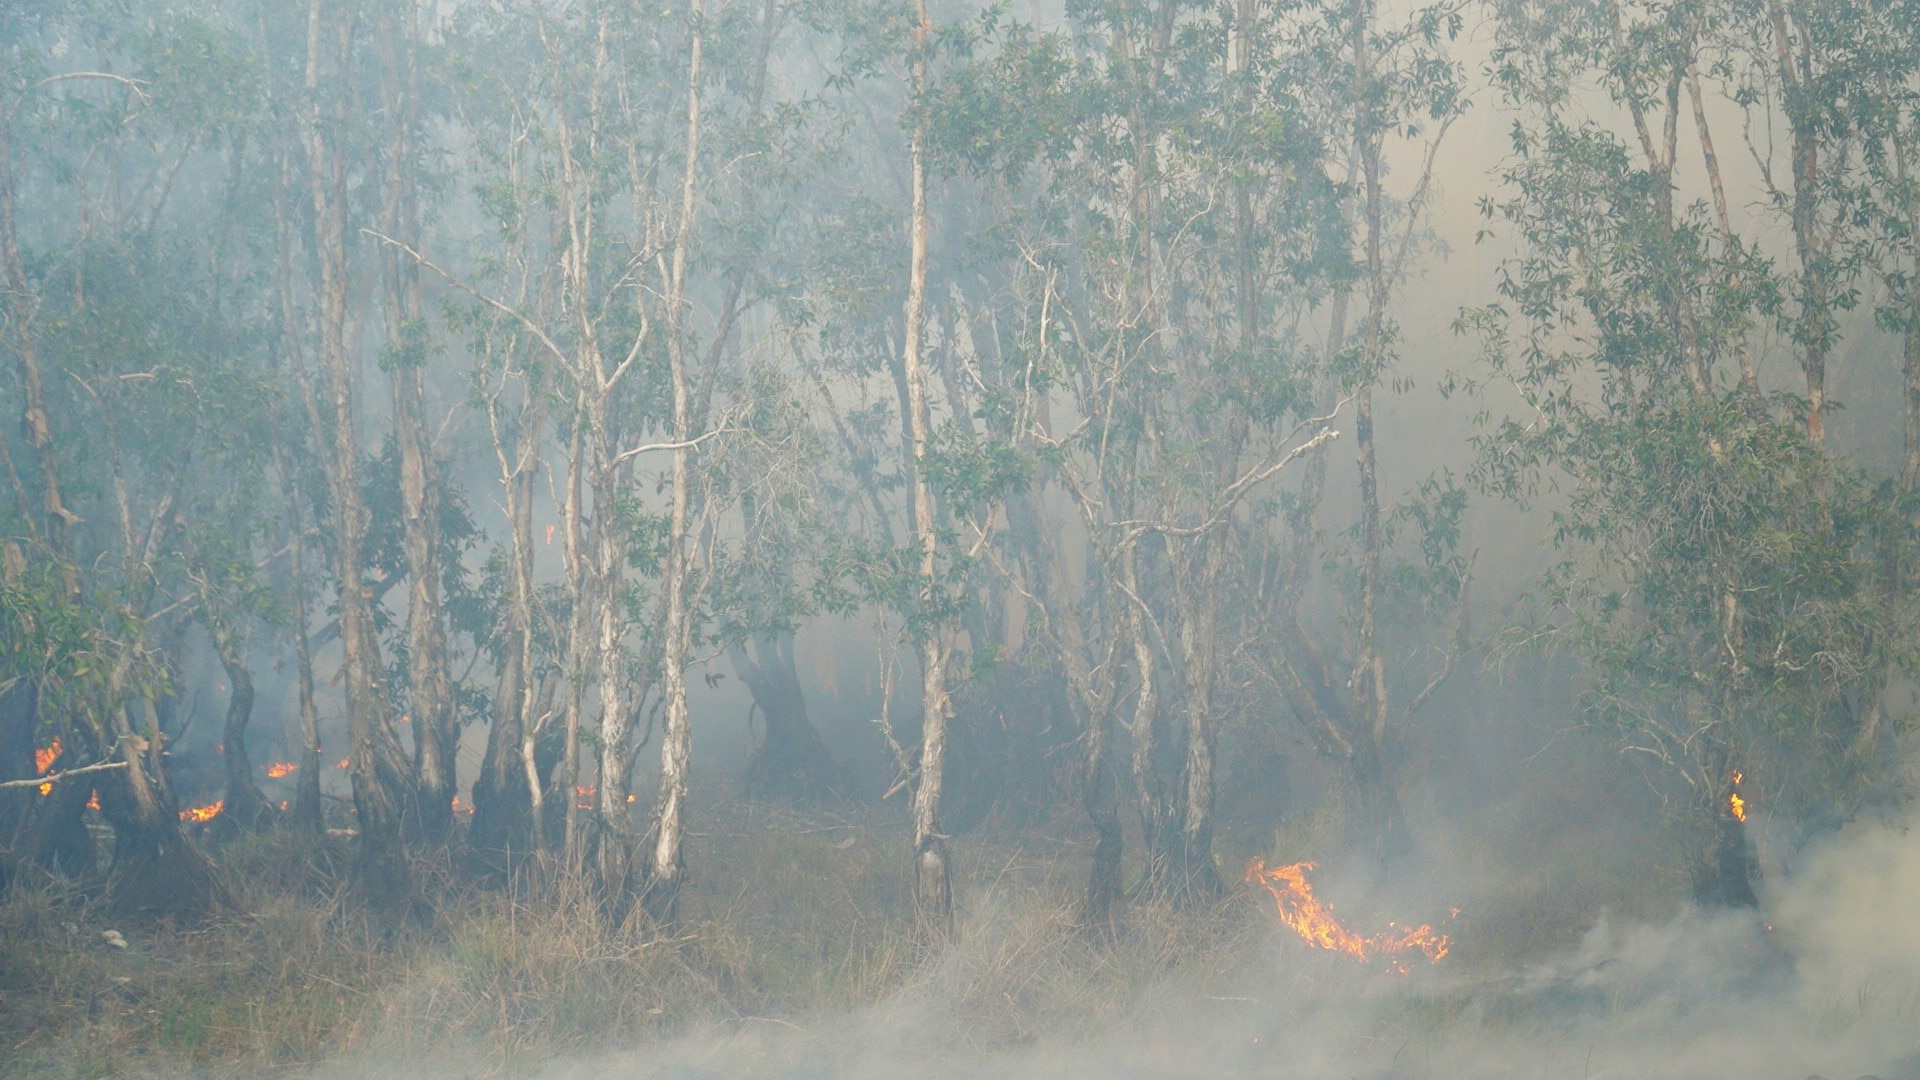 Điều tra, xử lý nghiêm người gây cháy rừng ở Vườn quốc gia Tràm Chim- Ảnh 1.